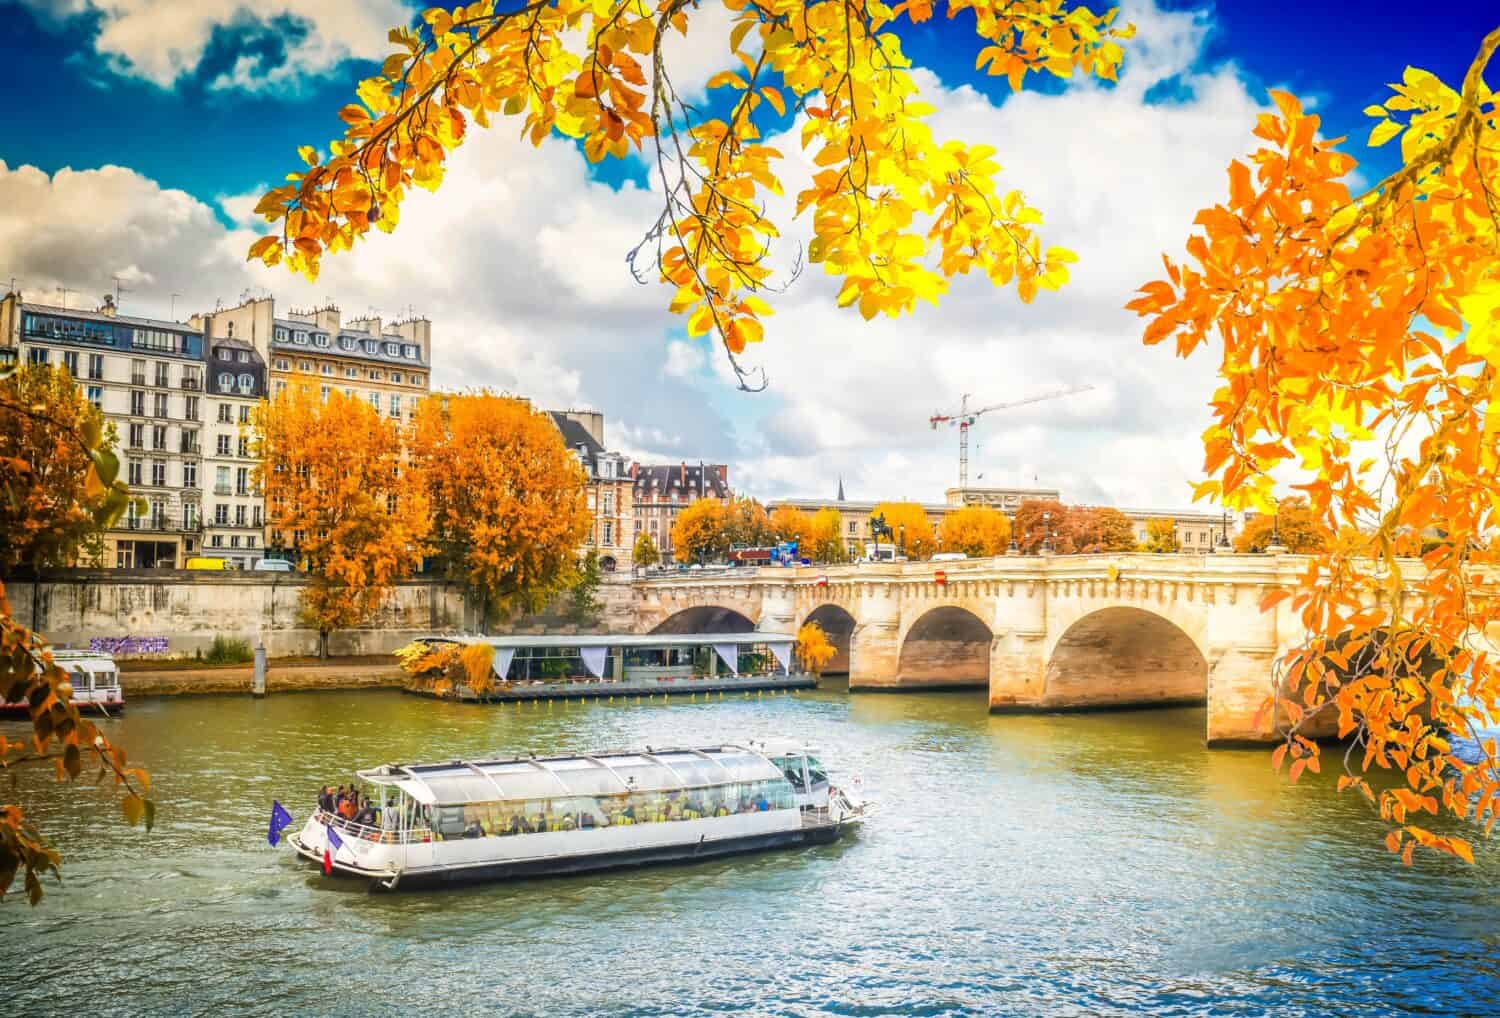 Pont Neuf e le acque del fiume Senna con nave da crociera, cielo azzurro con nuvole, Parigi in autunno, Francia con il sole